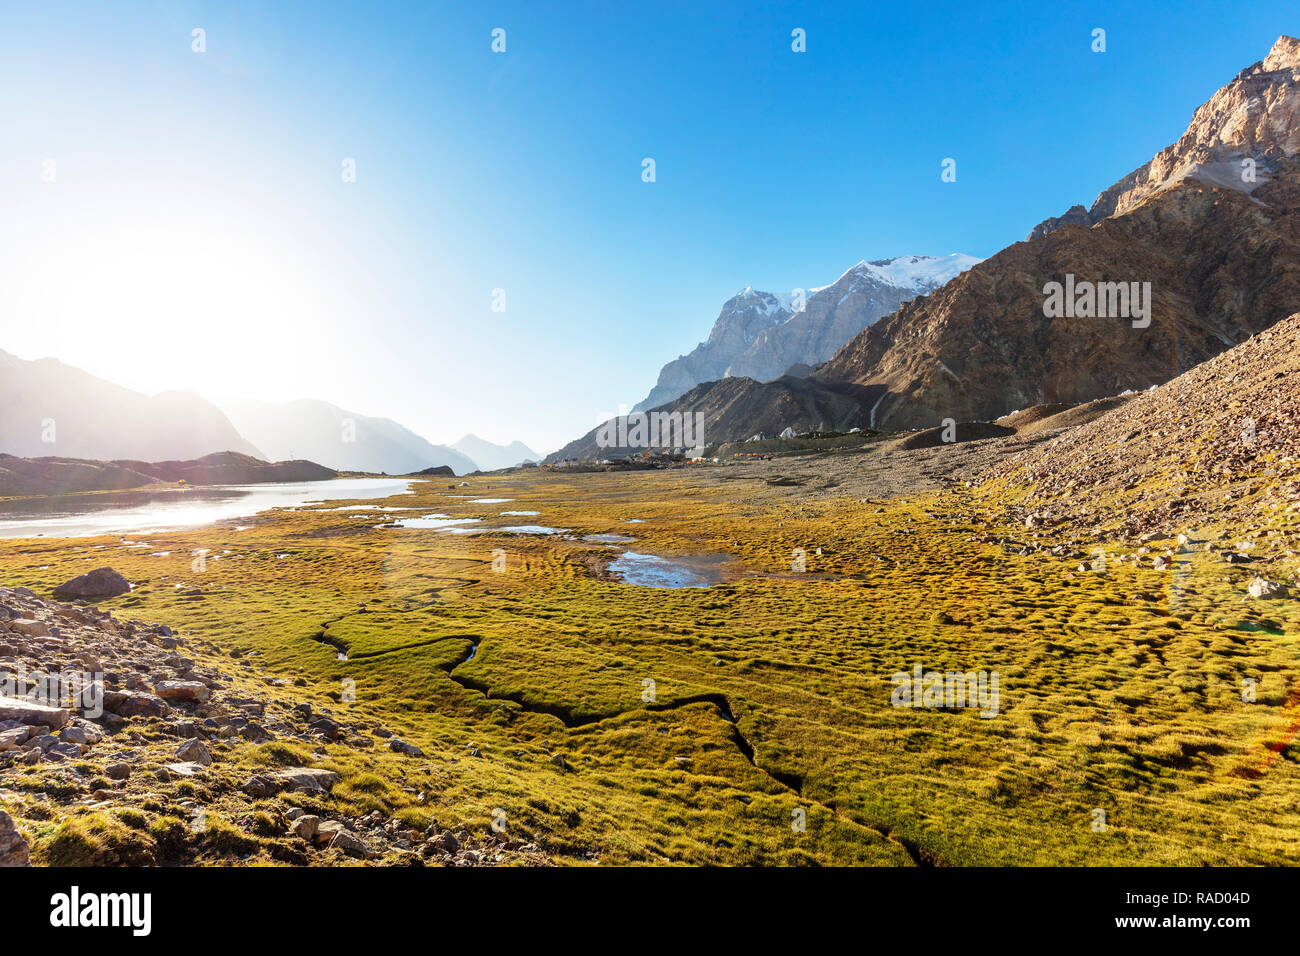 Paysage près de Moskvina, camp de base du parc national tadjik (montagnes du Pamir), site du patrimoine mondial de l'UNESCO, au Tadjikistan, en Asie centrale, Asie Banque D'Images